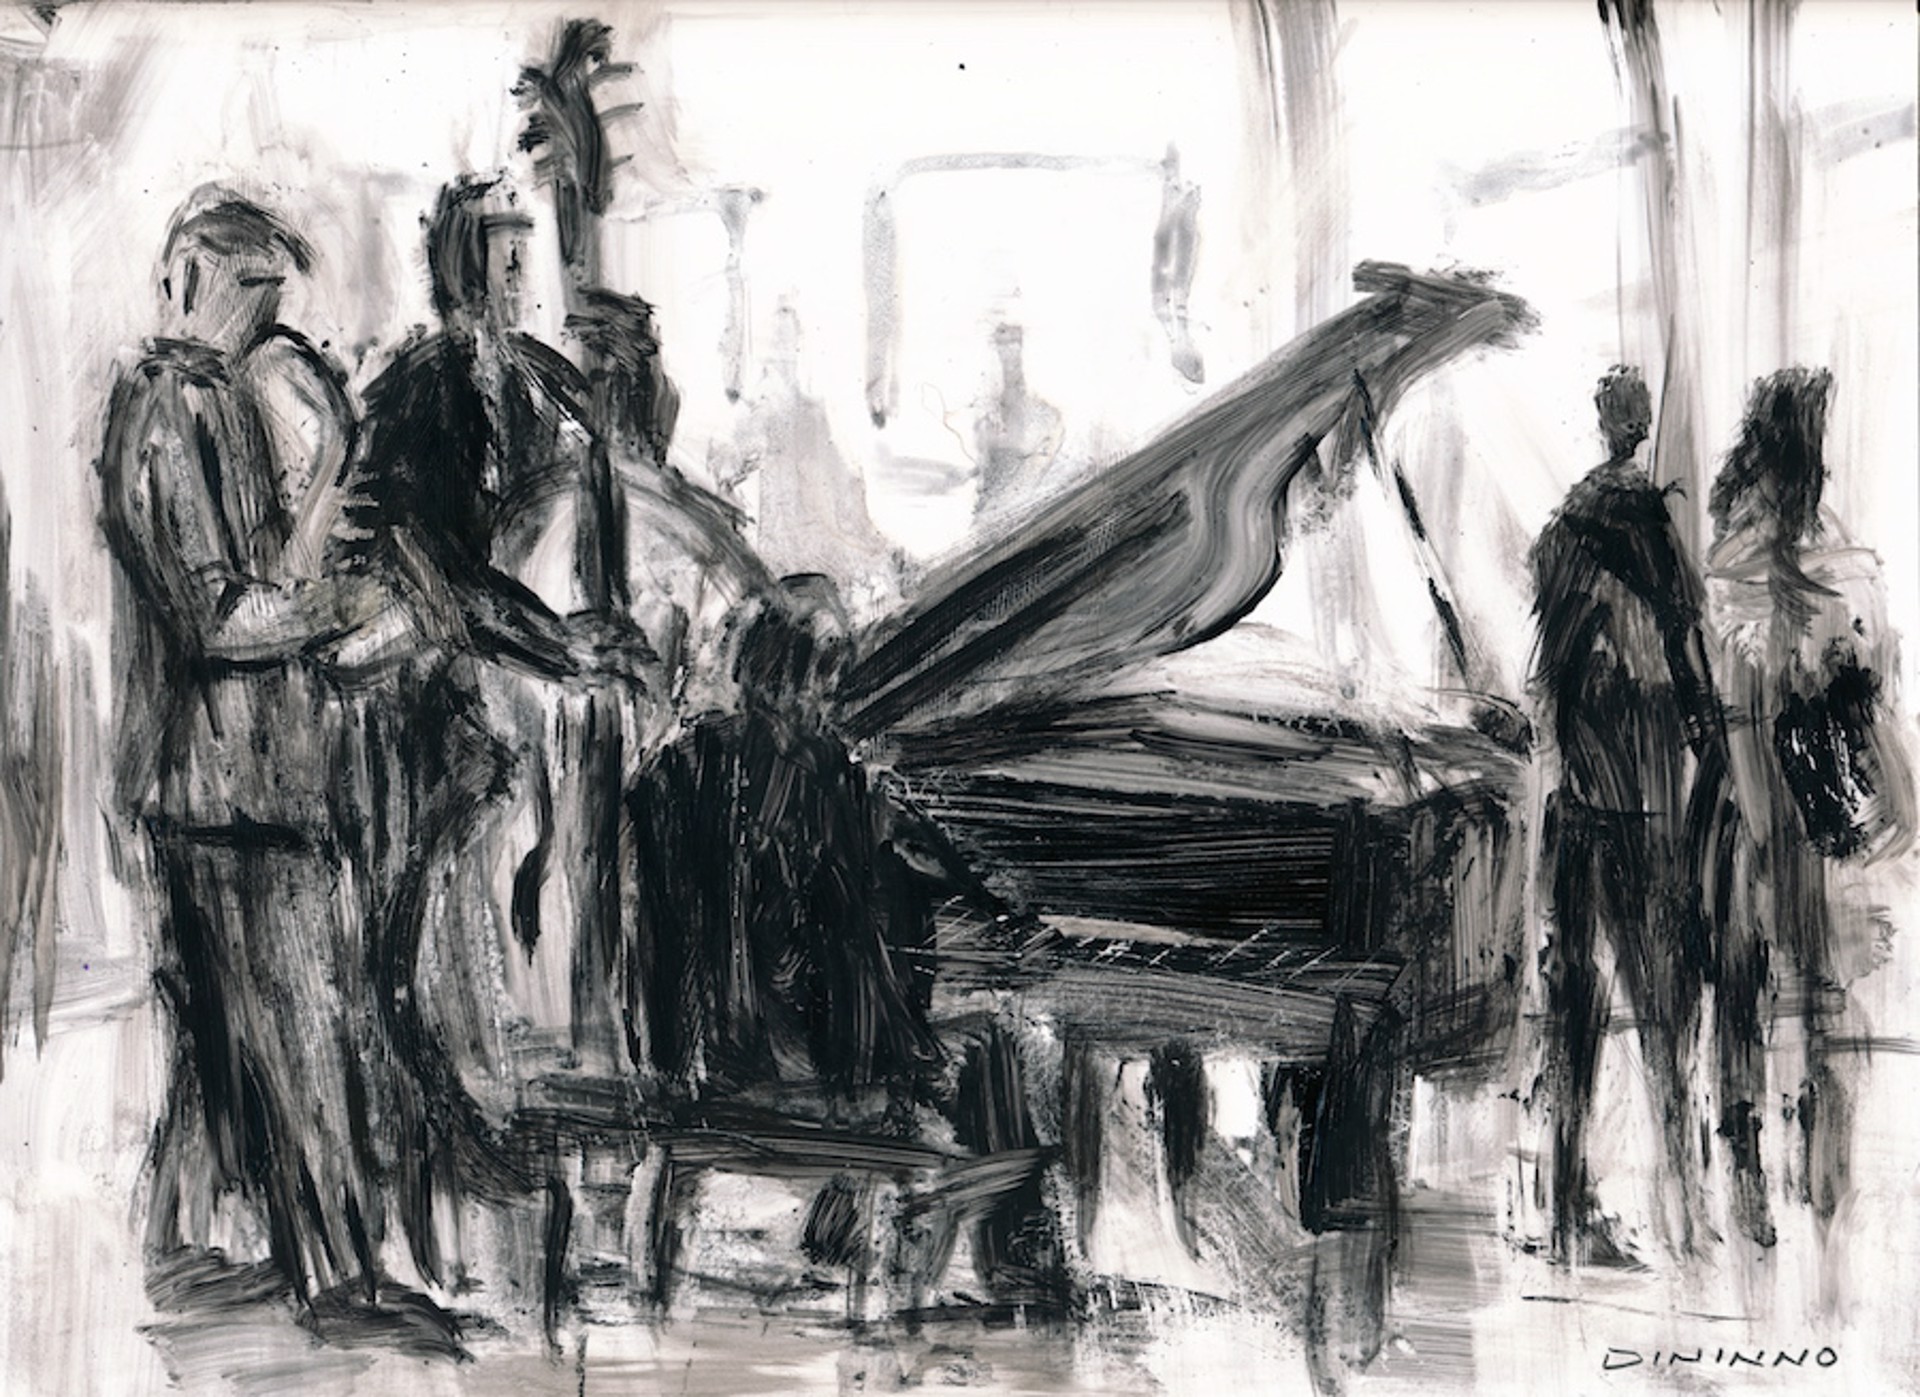 Jazz by Steve Dininno